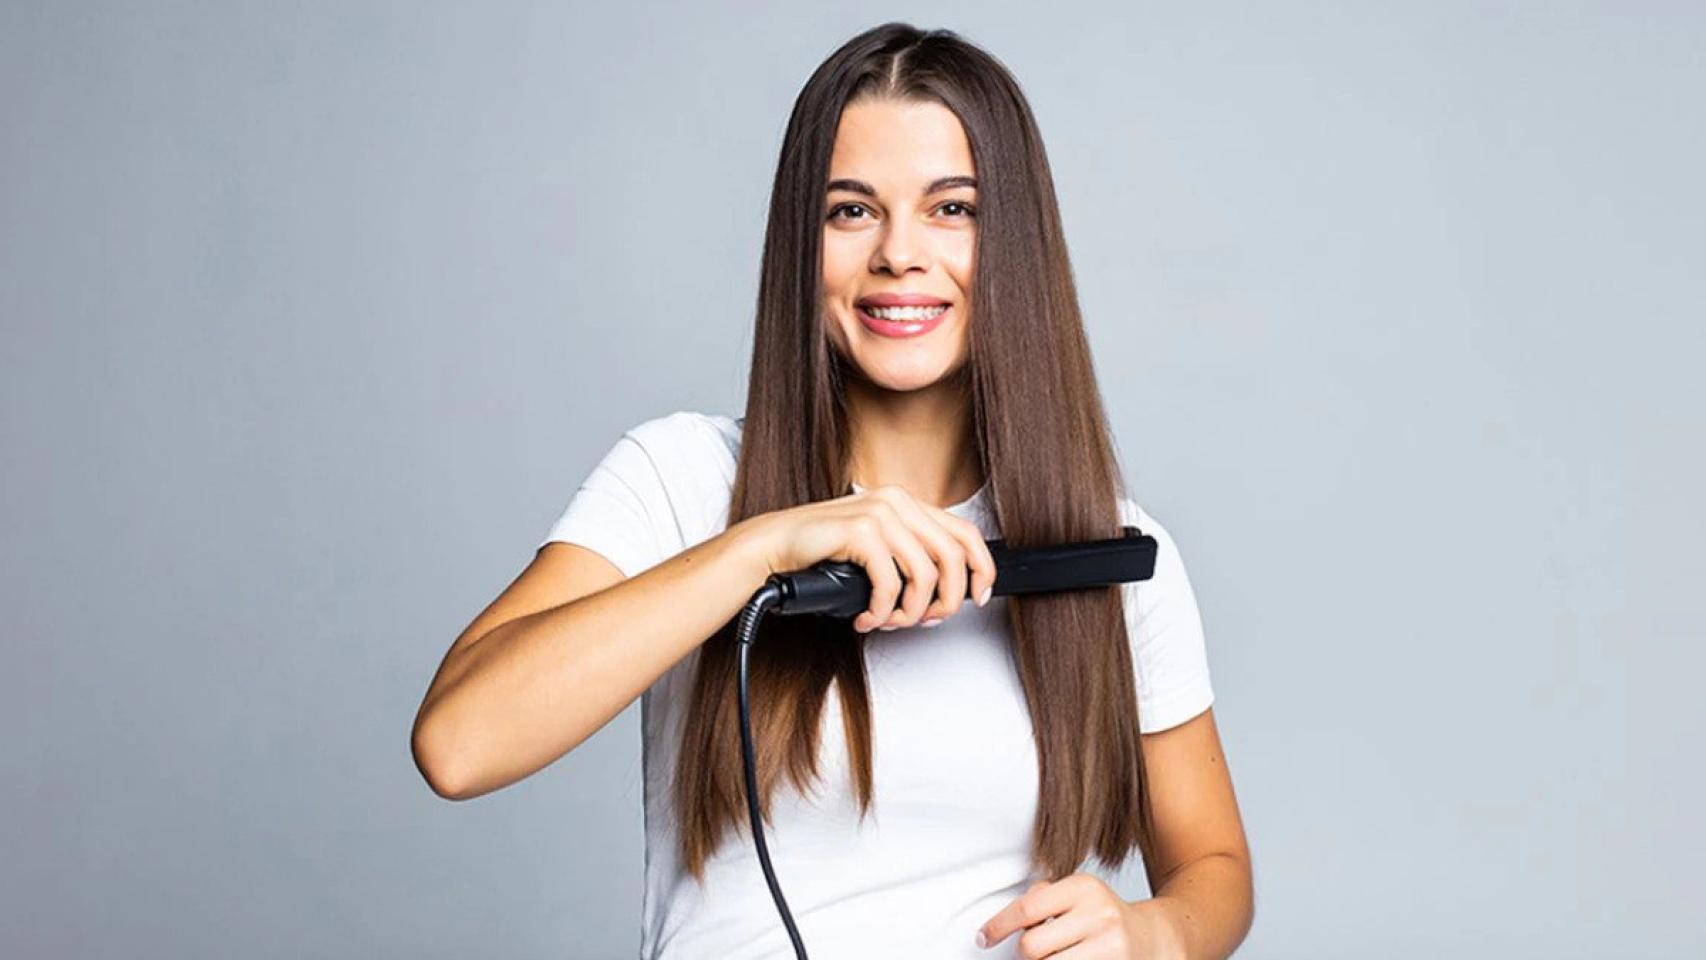 Oferta : La plancha de pelo Rowenta top ventas ¡ahora por